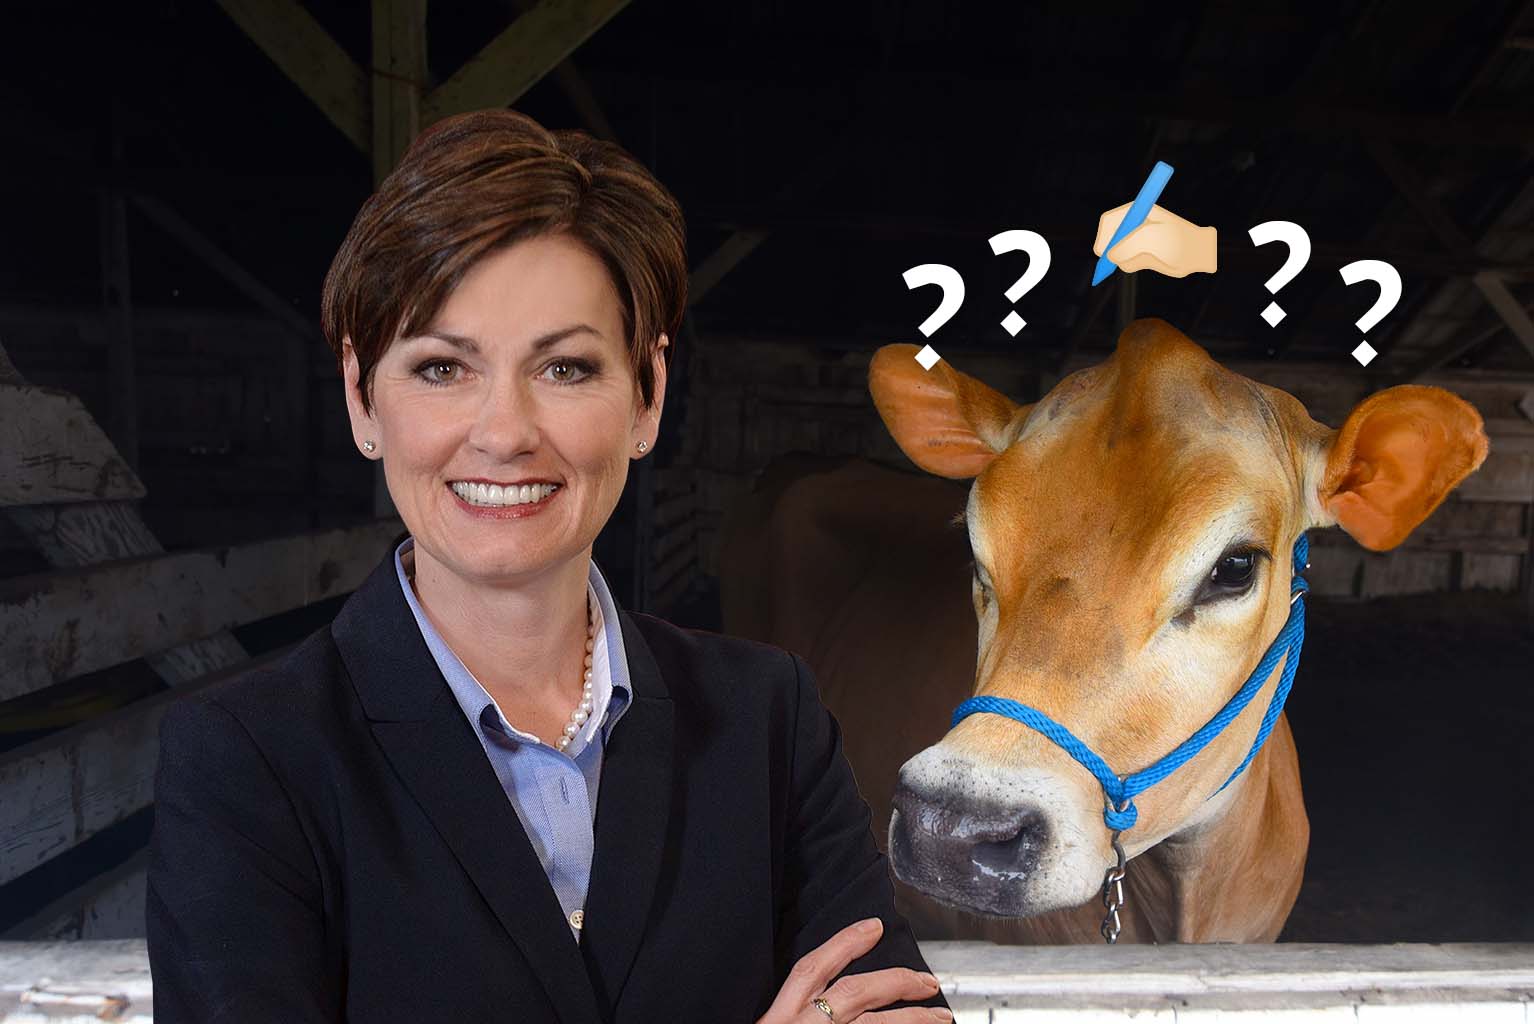 Raw milk reaches Iowa governor's desk